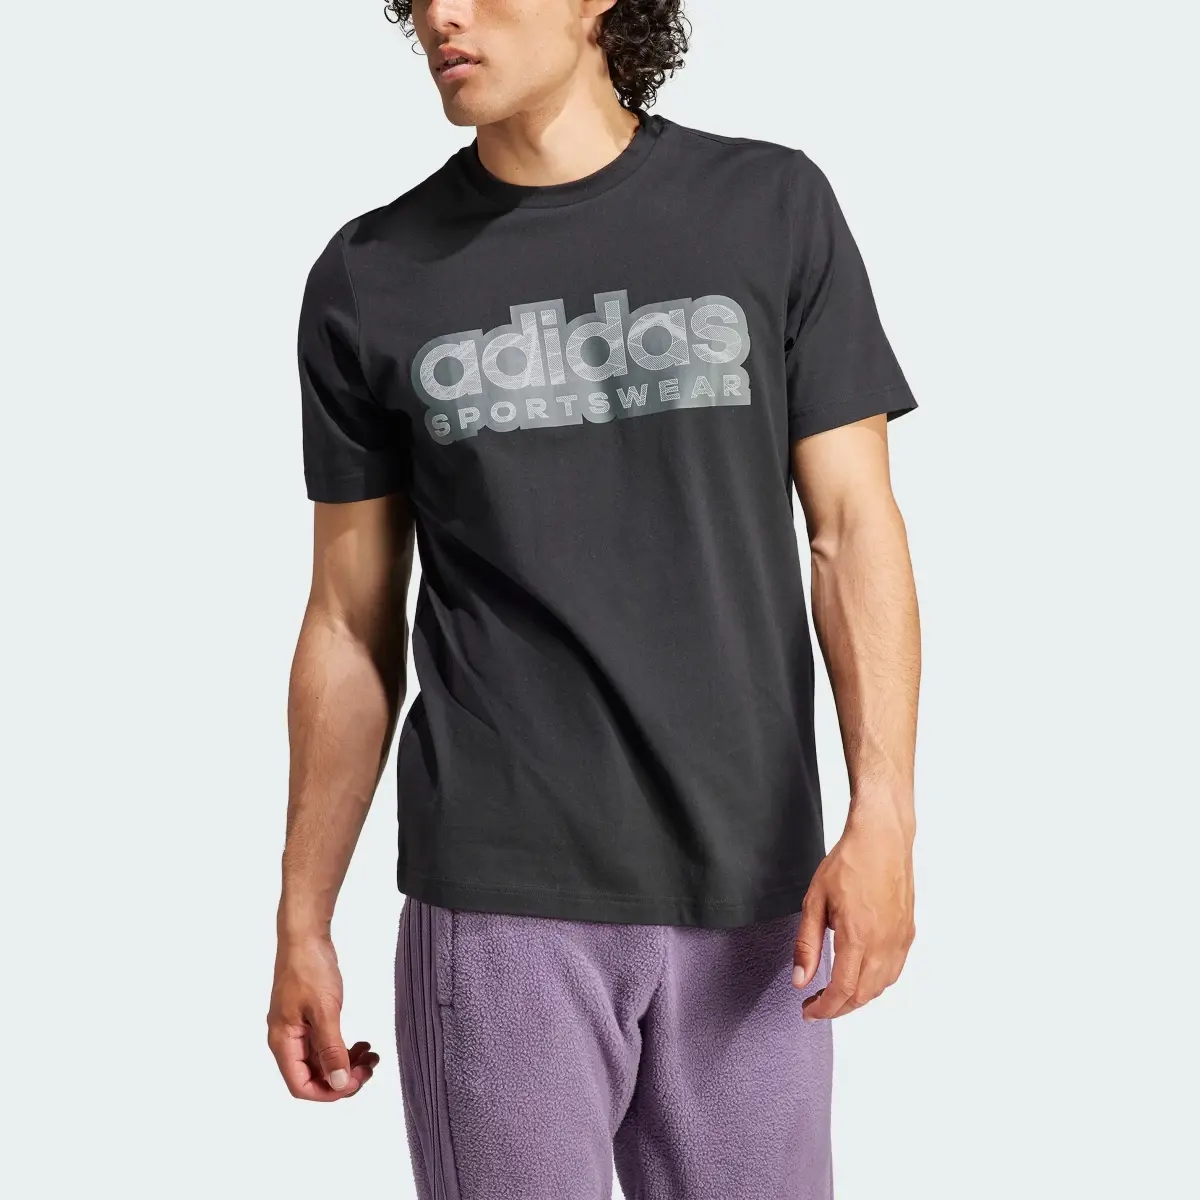 Adidas Tiro Graphic T-Shirt. 1